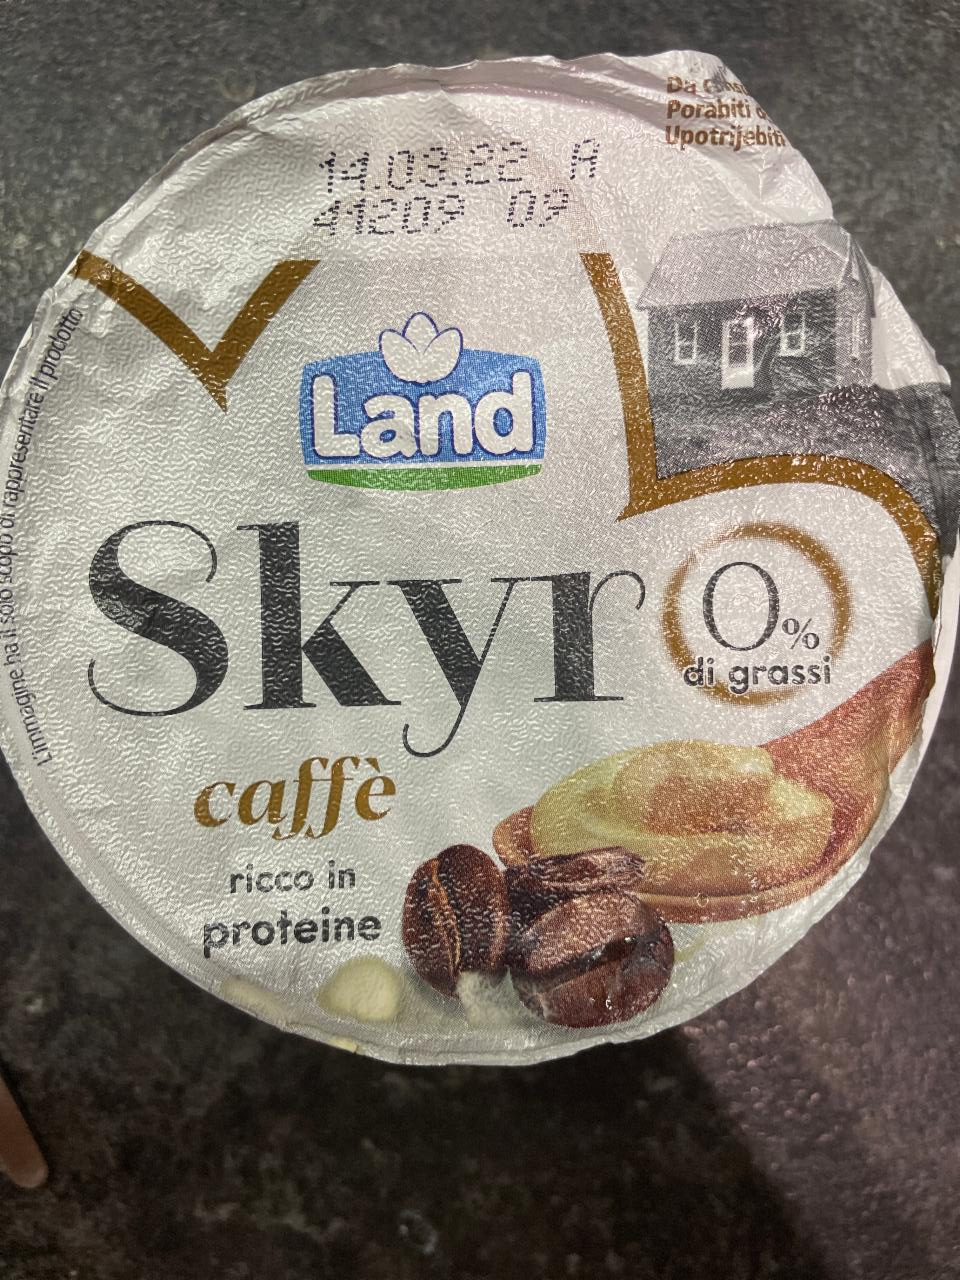 Fotografie - Skyr caffé 0% di grassi Land